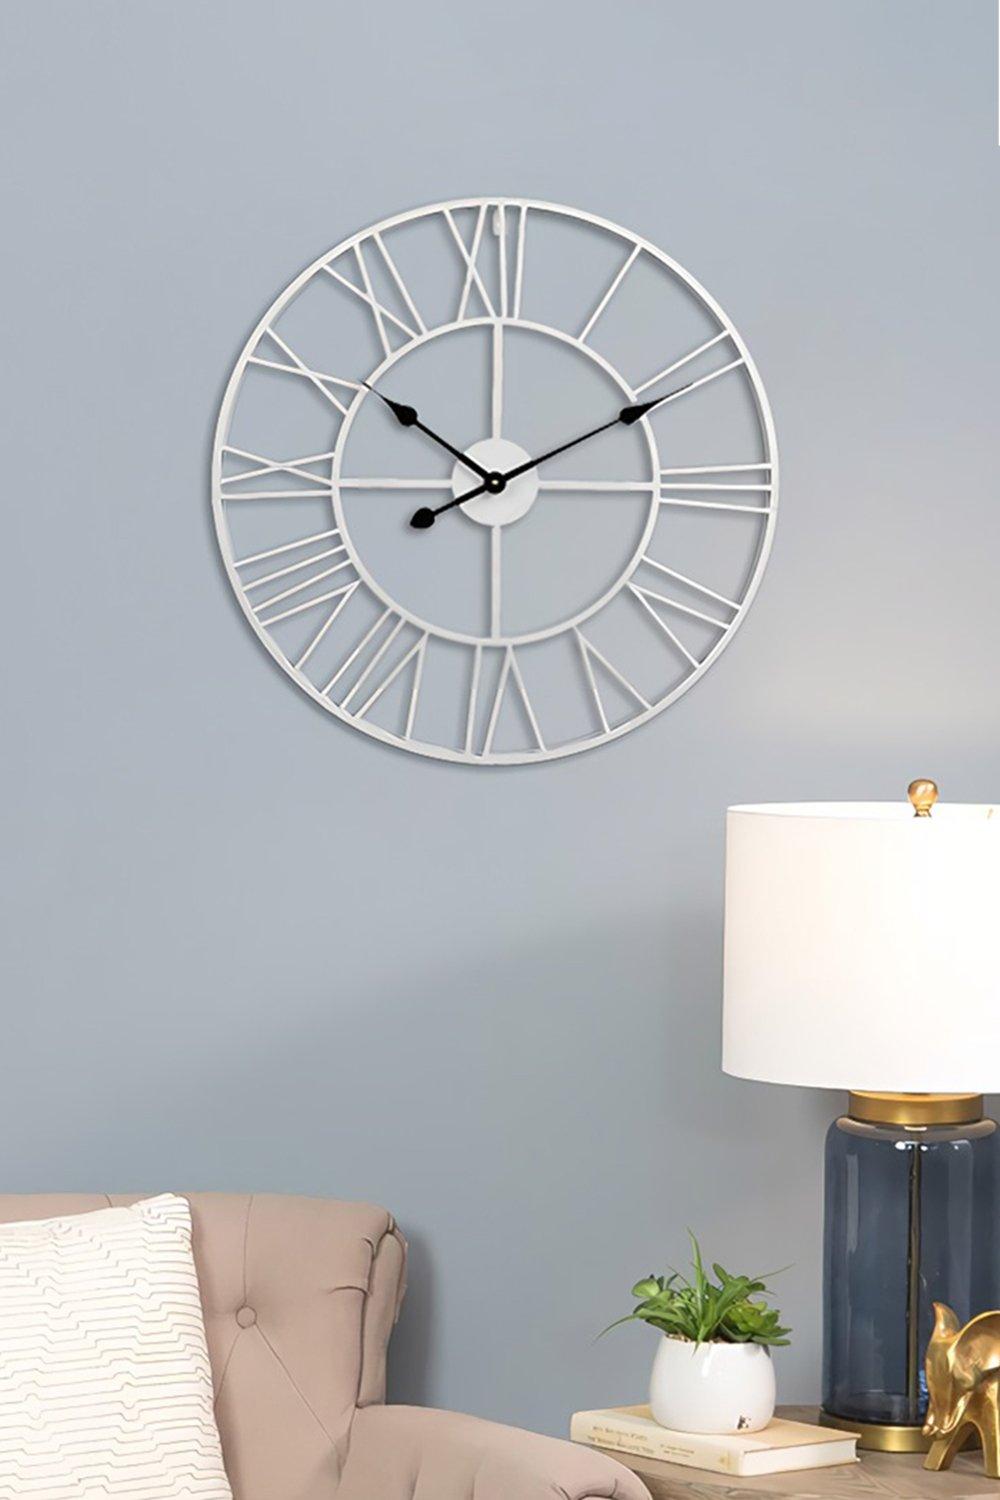 40cm Dia Round White Roman Numeral Skeleton Wall Clock with Black Needle